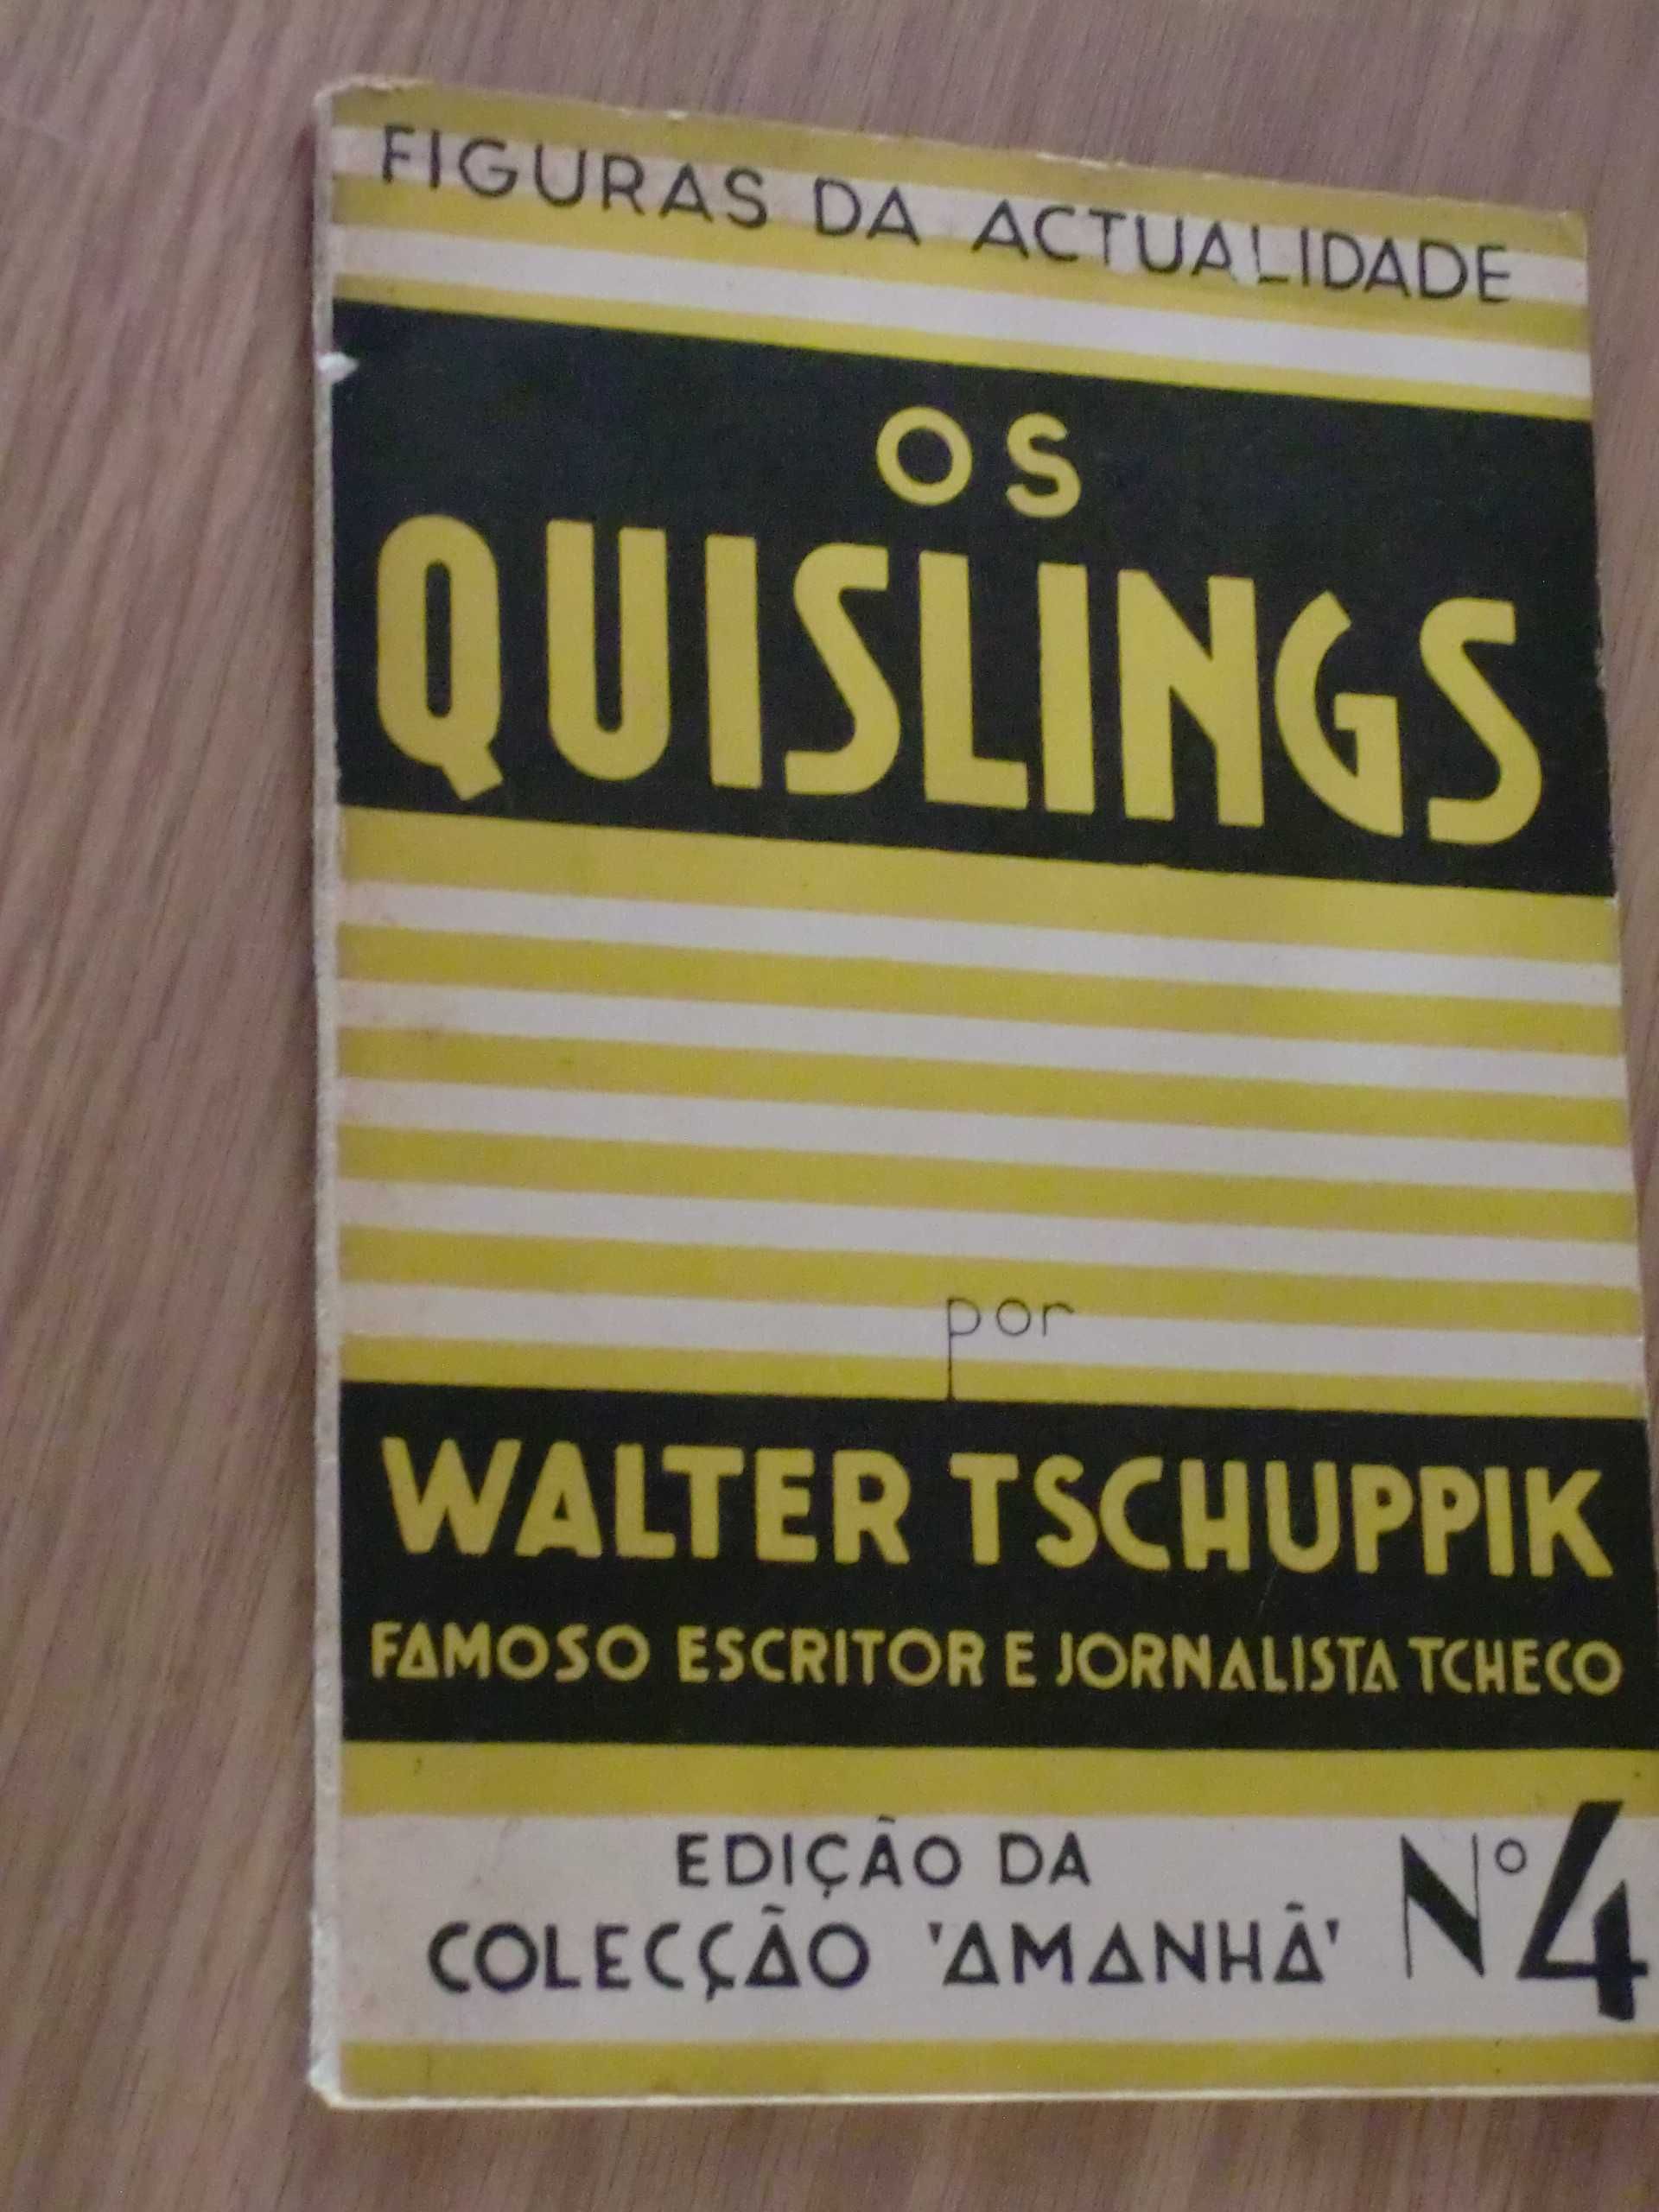 Os Quislings
por Walter Tschuppik